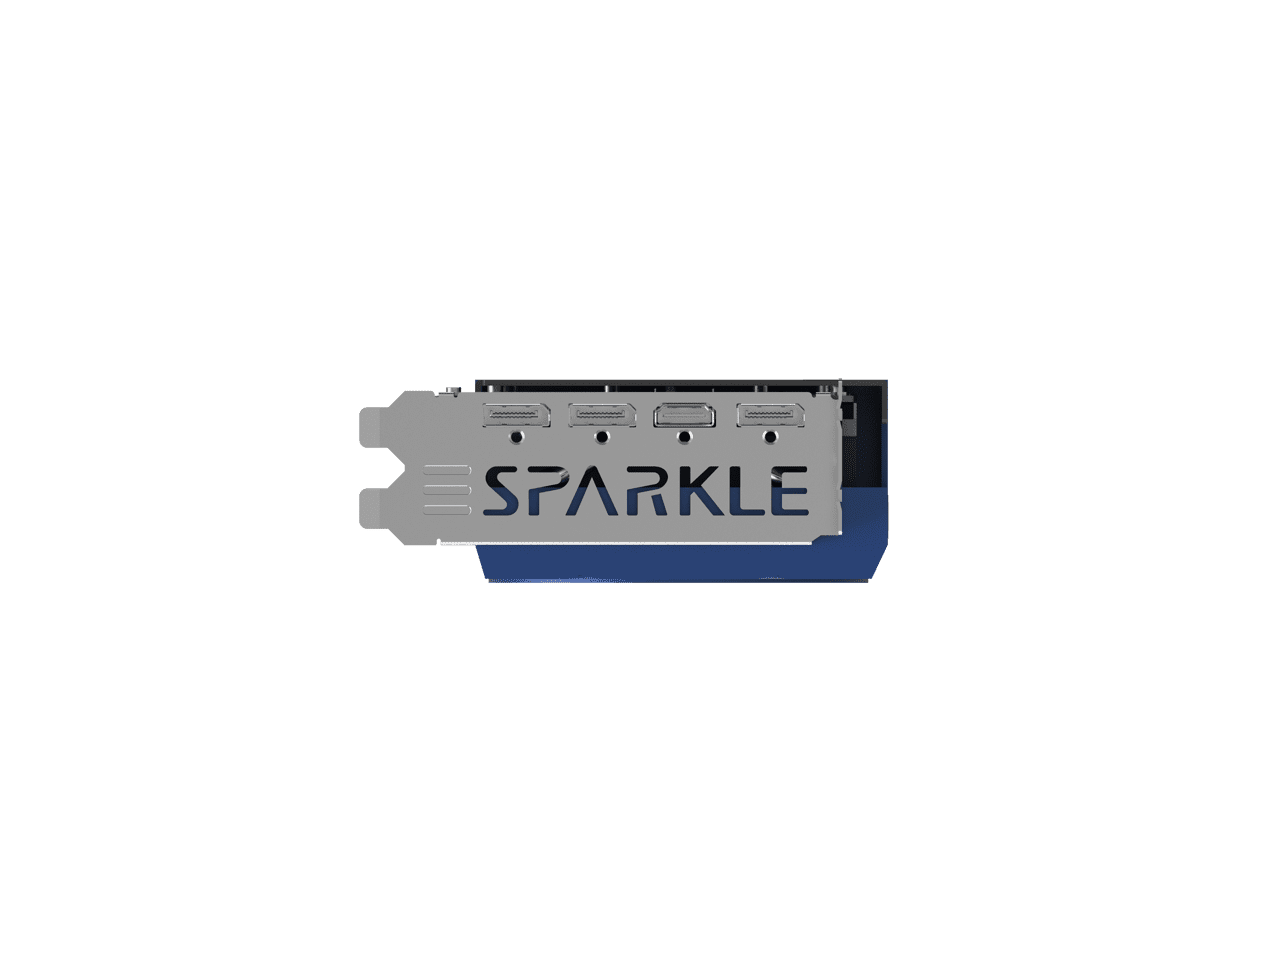 SPARKLE Intel Arc A770 TITAN OC Edition, 16GB GDDR6, ThermalSync